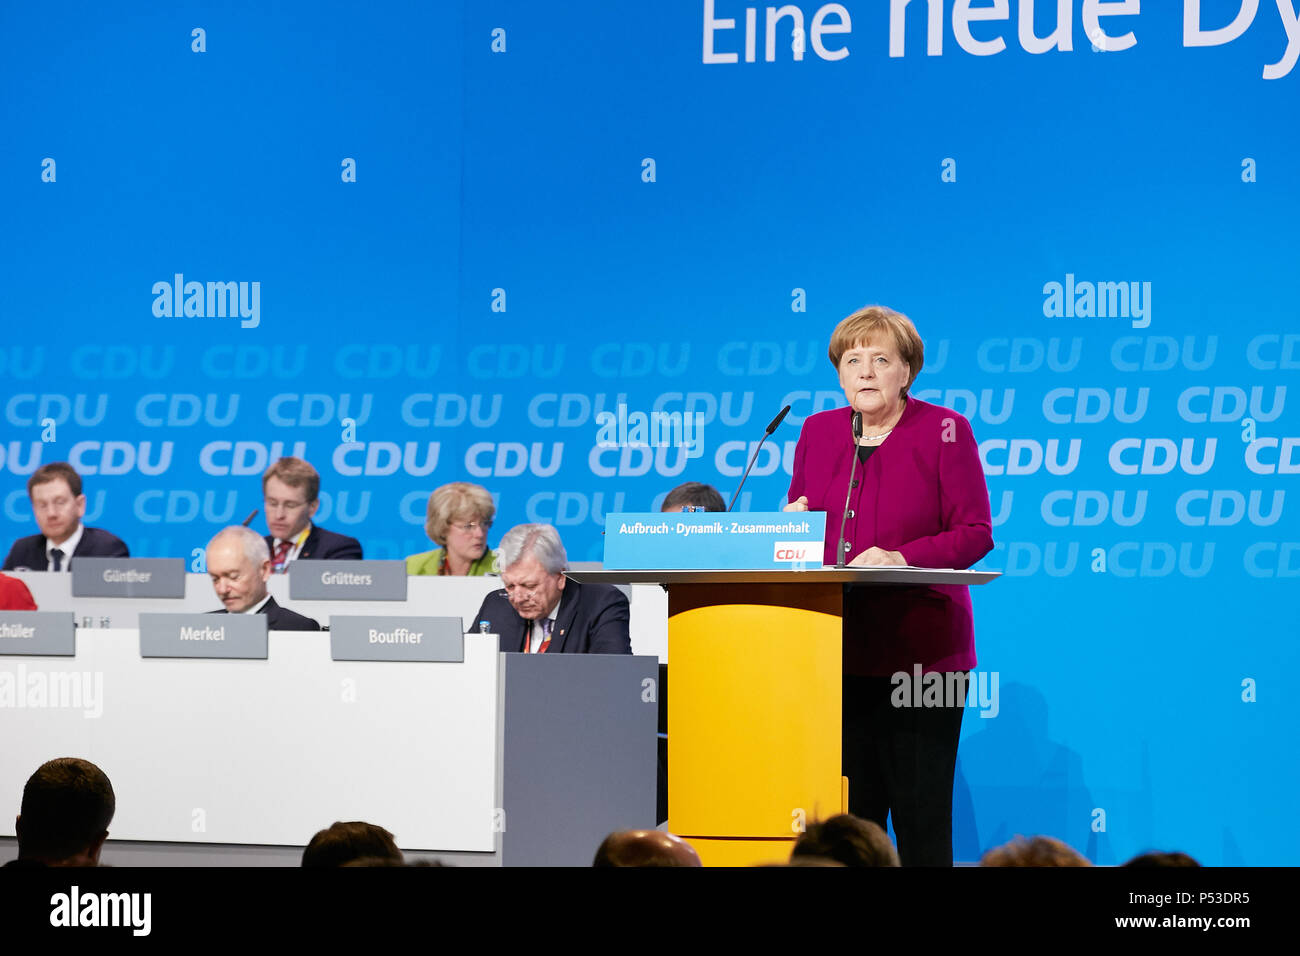 Berlin, Deutschland - Die CDU-Chefin Angela Merkel hält eine Rede auf der 30. Bundesparteitag der CDU. Stockfoto